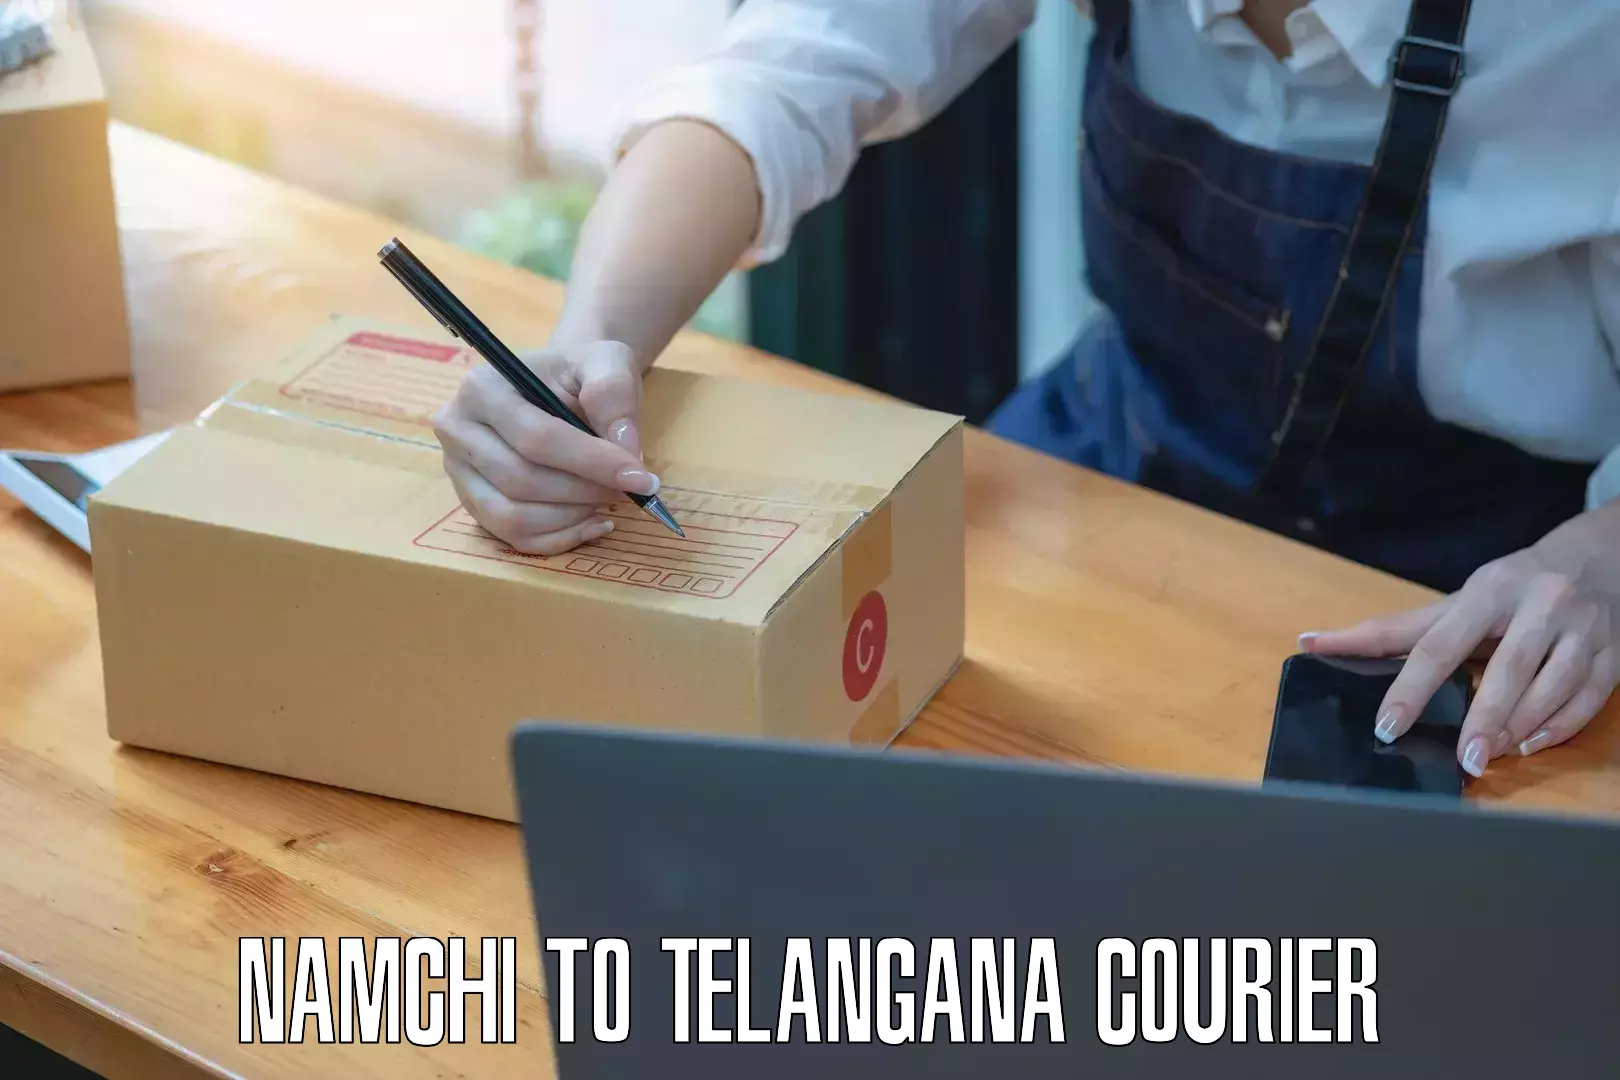 Affordable shipping solutions Namchi to Telangana